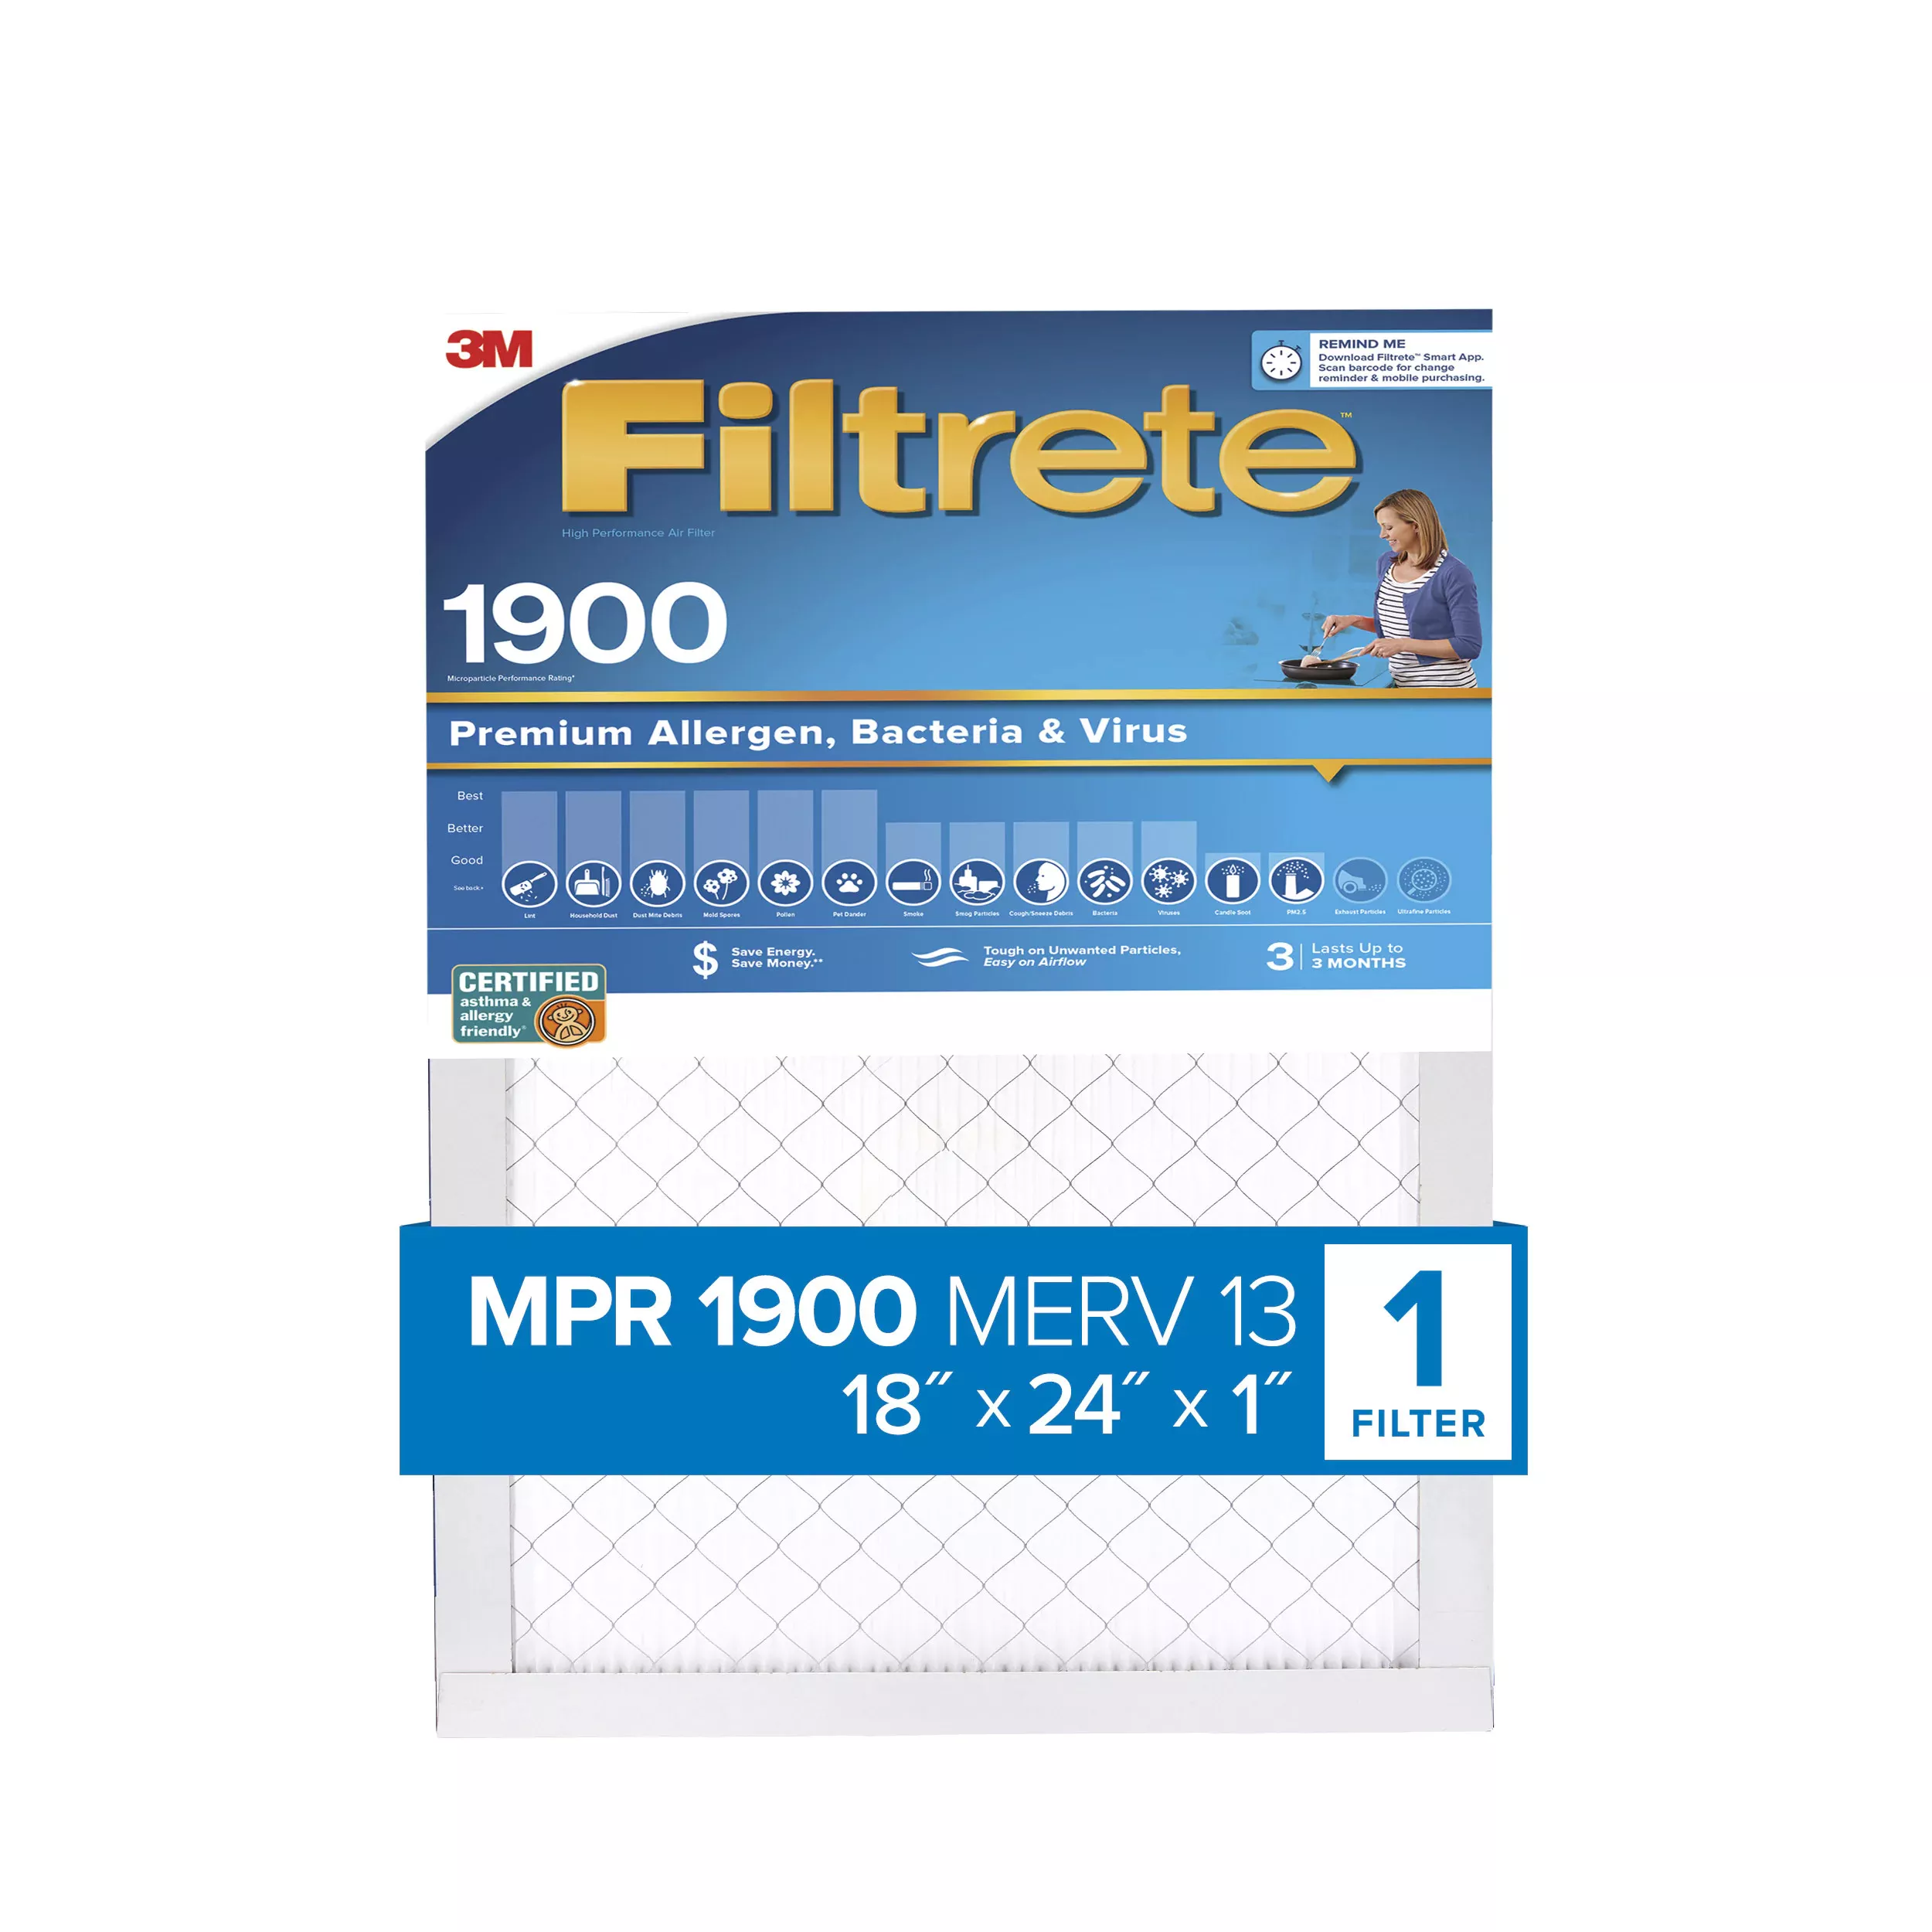 Filtrete™ Premium Allergen, Bacteria & Virus Air Filter, 1900 MPR,
UA21-4, 18 in x 24 in x 1 in (45,7 cm x 60,9 cm x 2,5 cm)